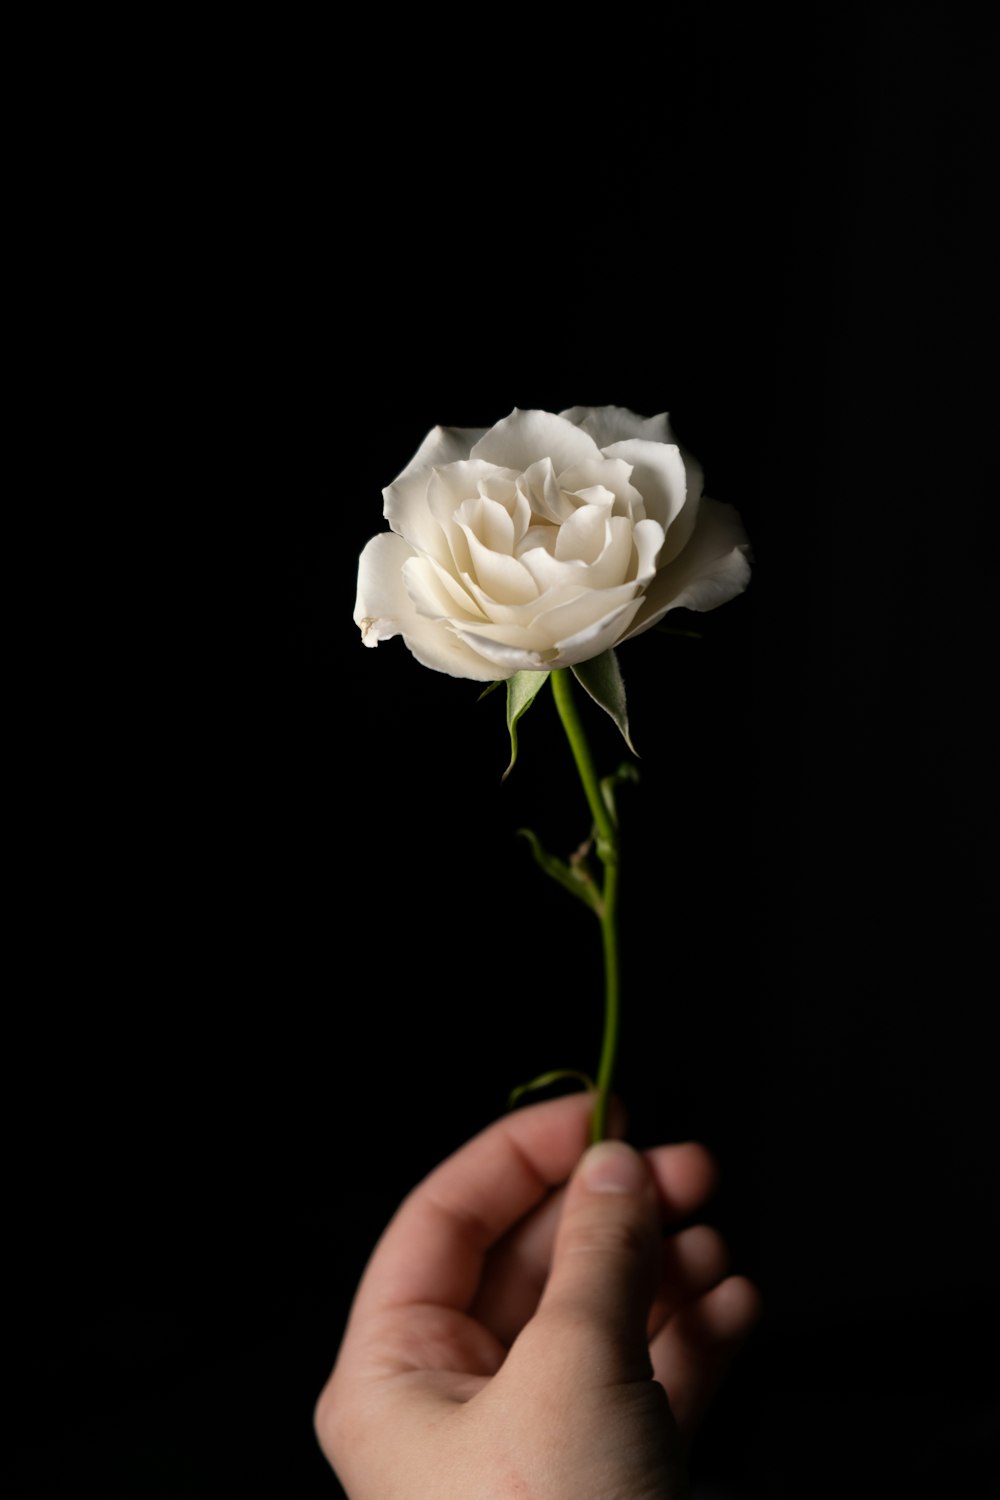 rosa bianca in mano di persone